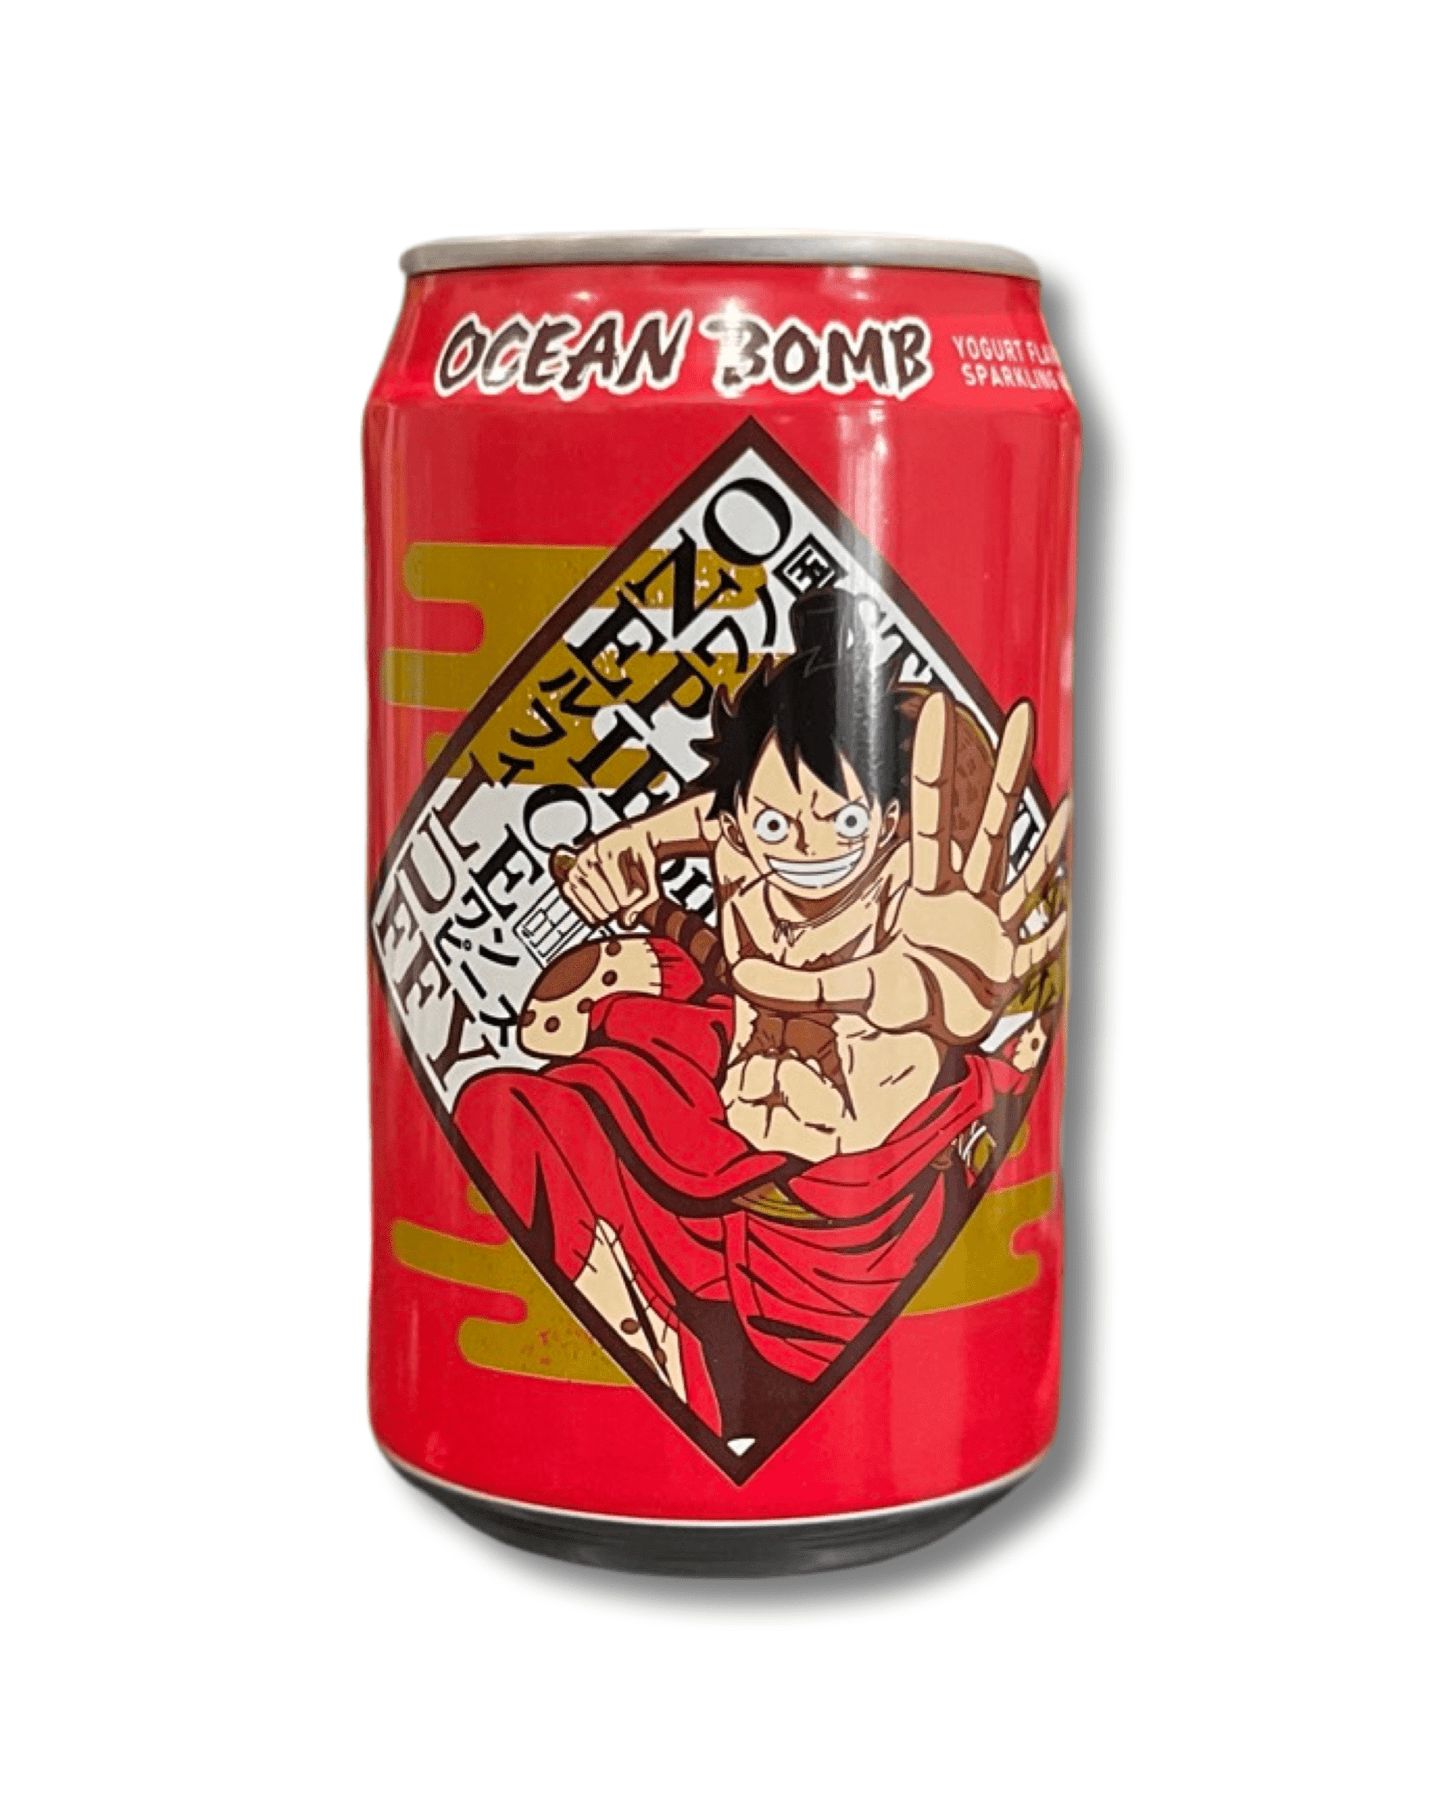 Ocean Bomb One Piece- Luffy “Yogurt” (Taiwan) - Exotic Soda Company